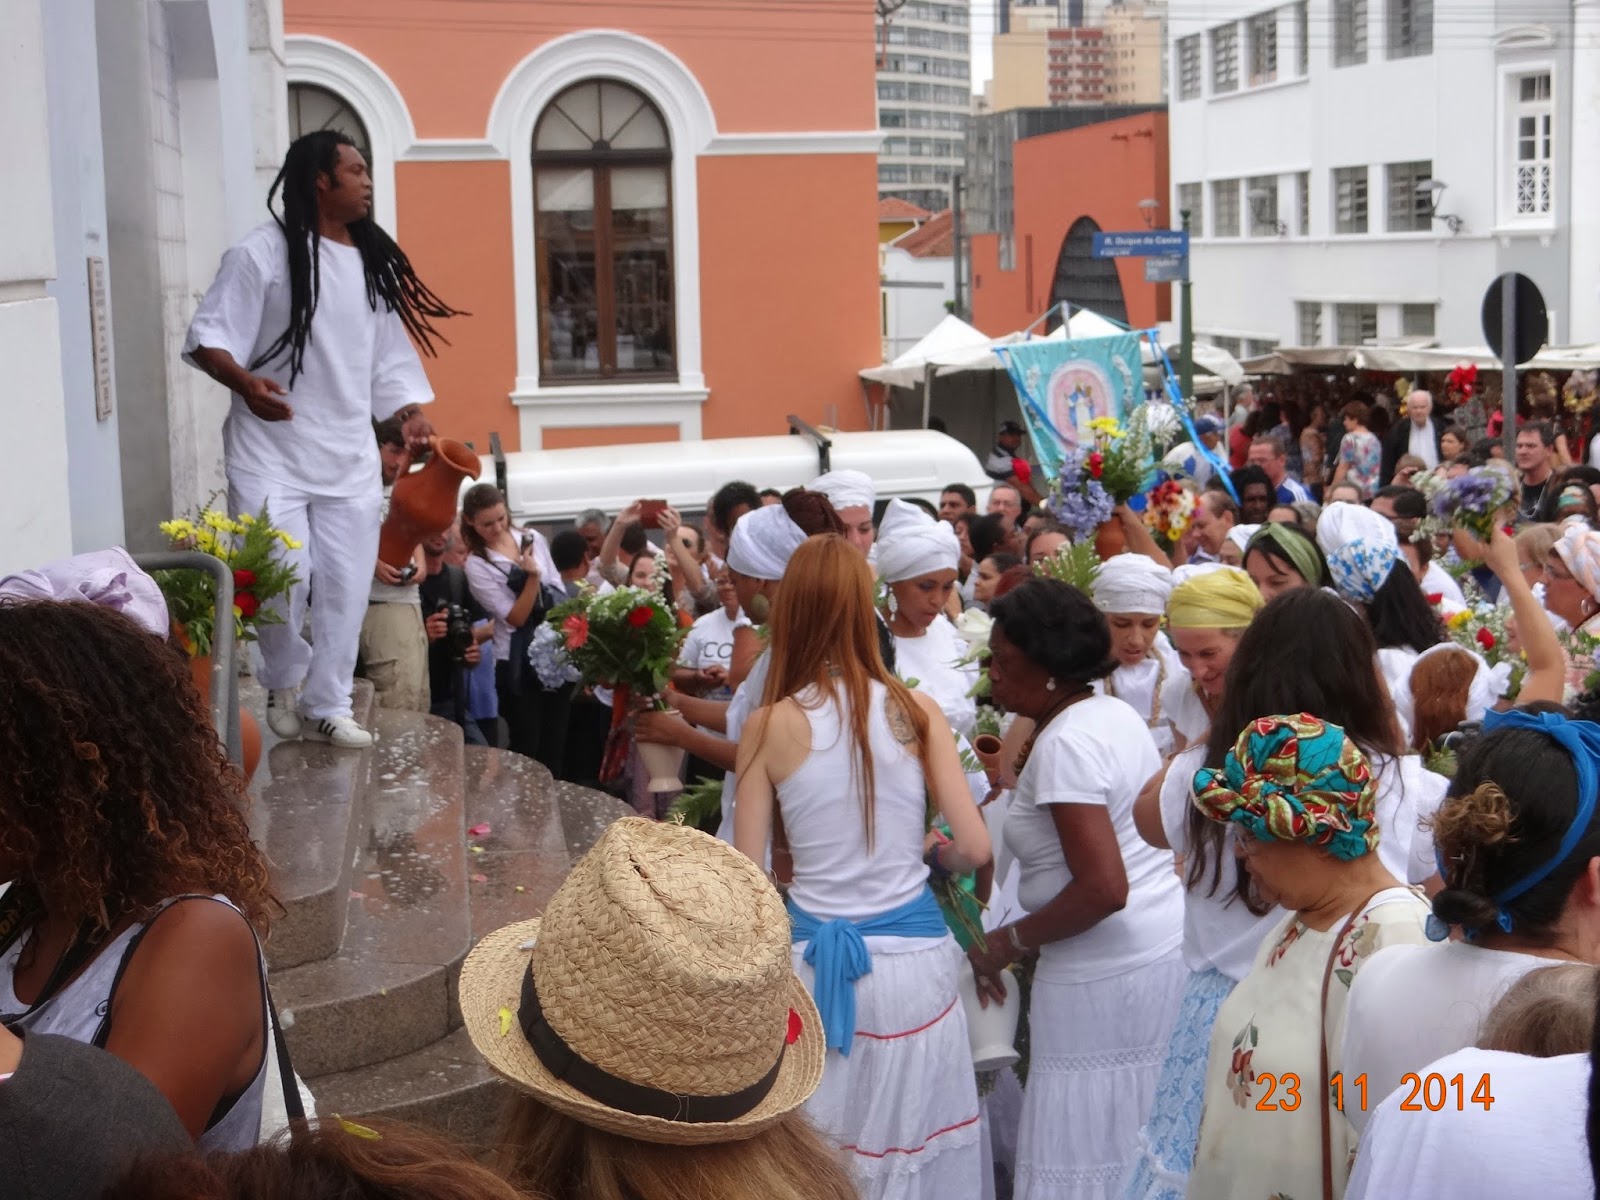 ENSINO RELIGIOSO EM SALA DE AULA: FESTIVAL RATHA YATRA